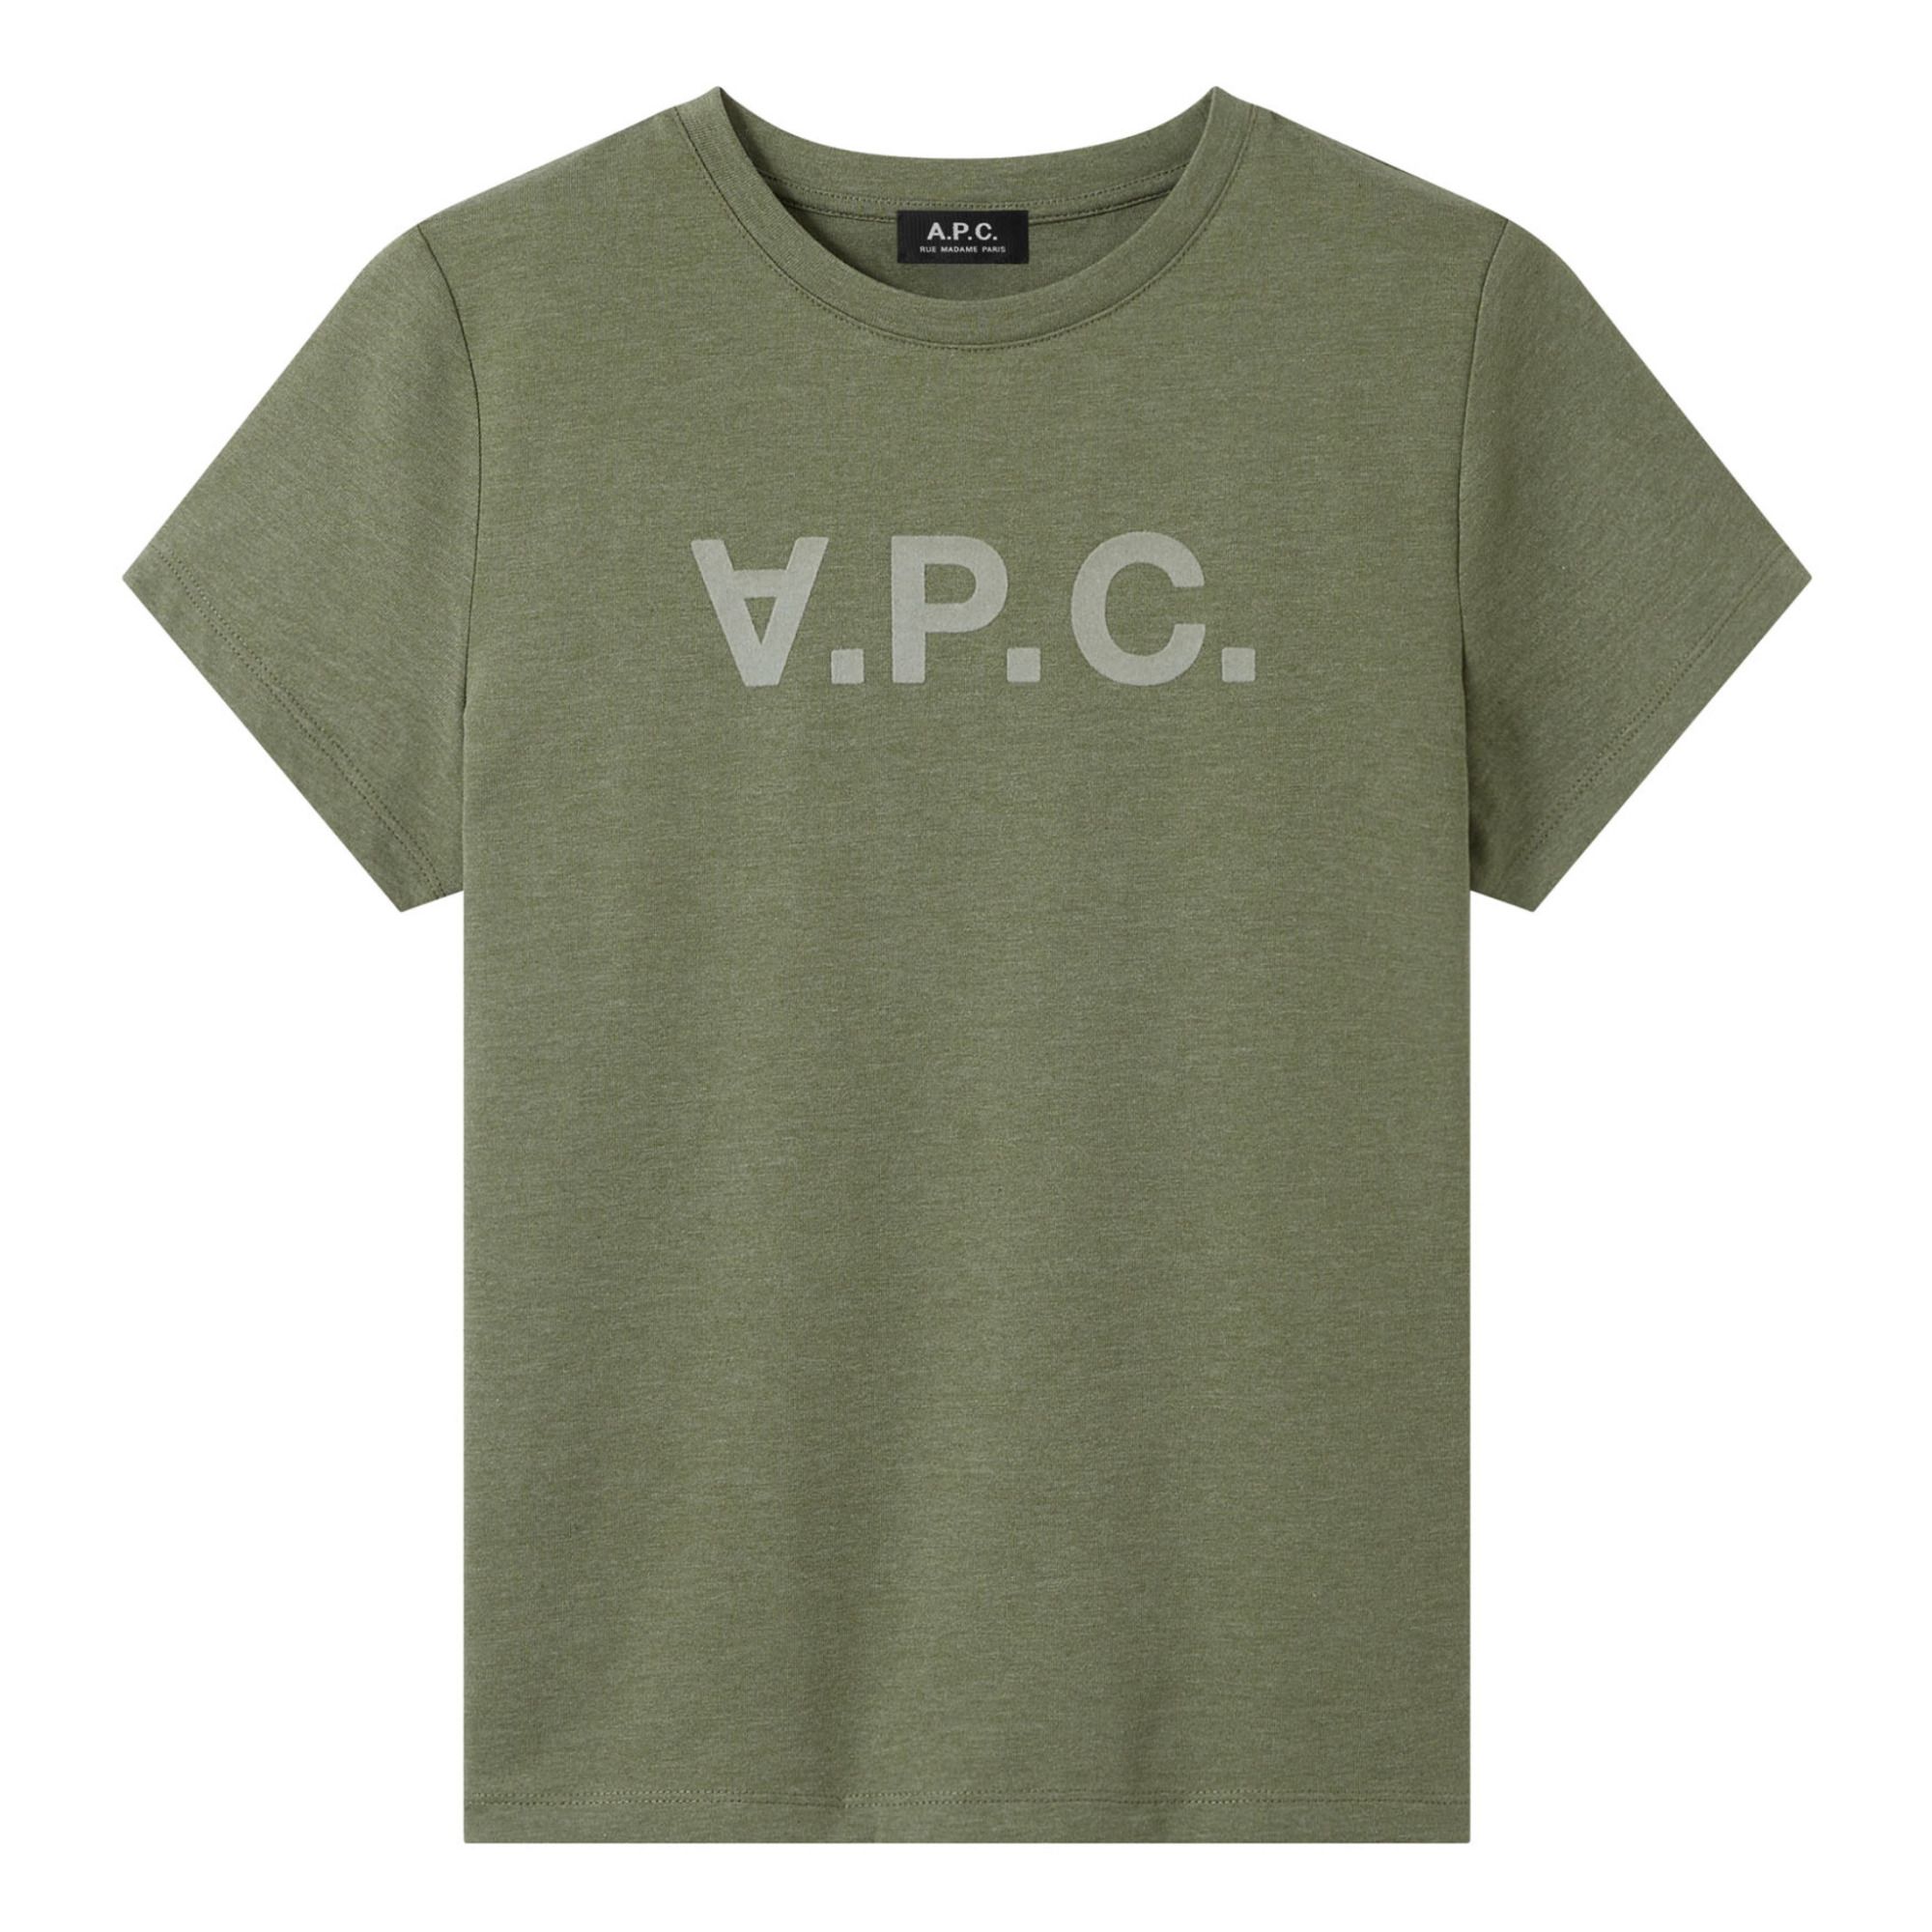 A.P.C. - T-shirt VPC Color F - Femme - Vert